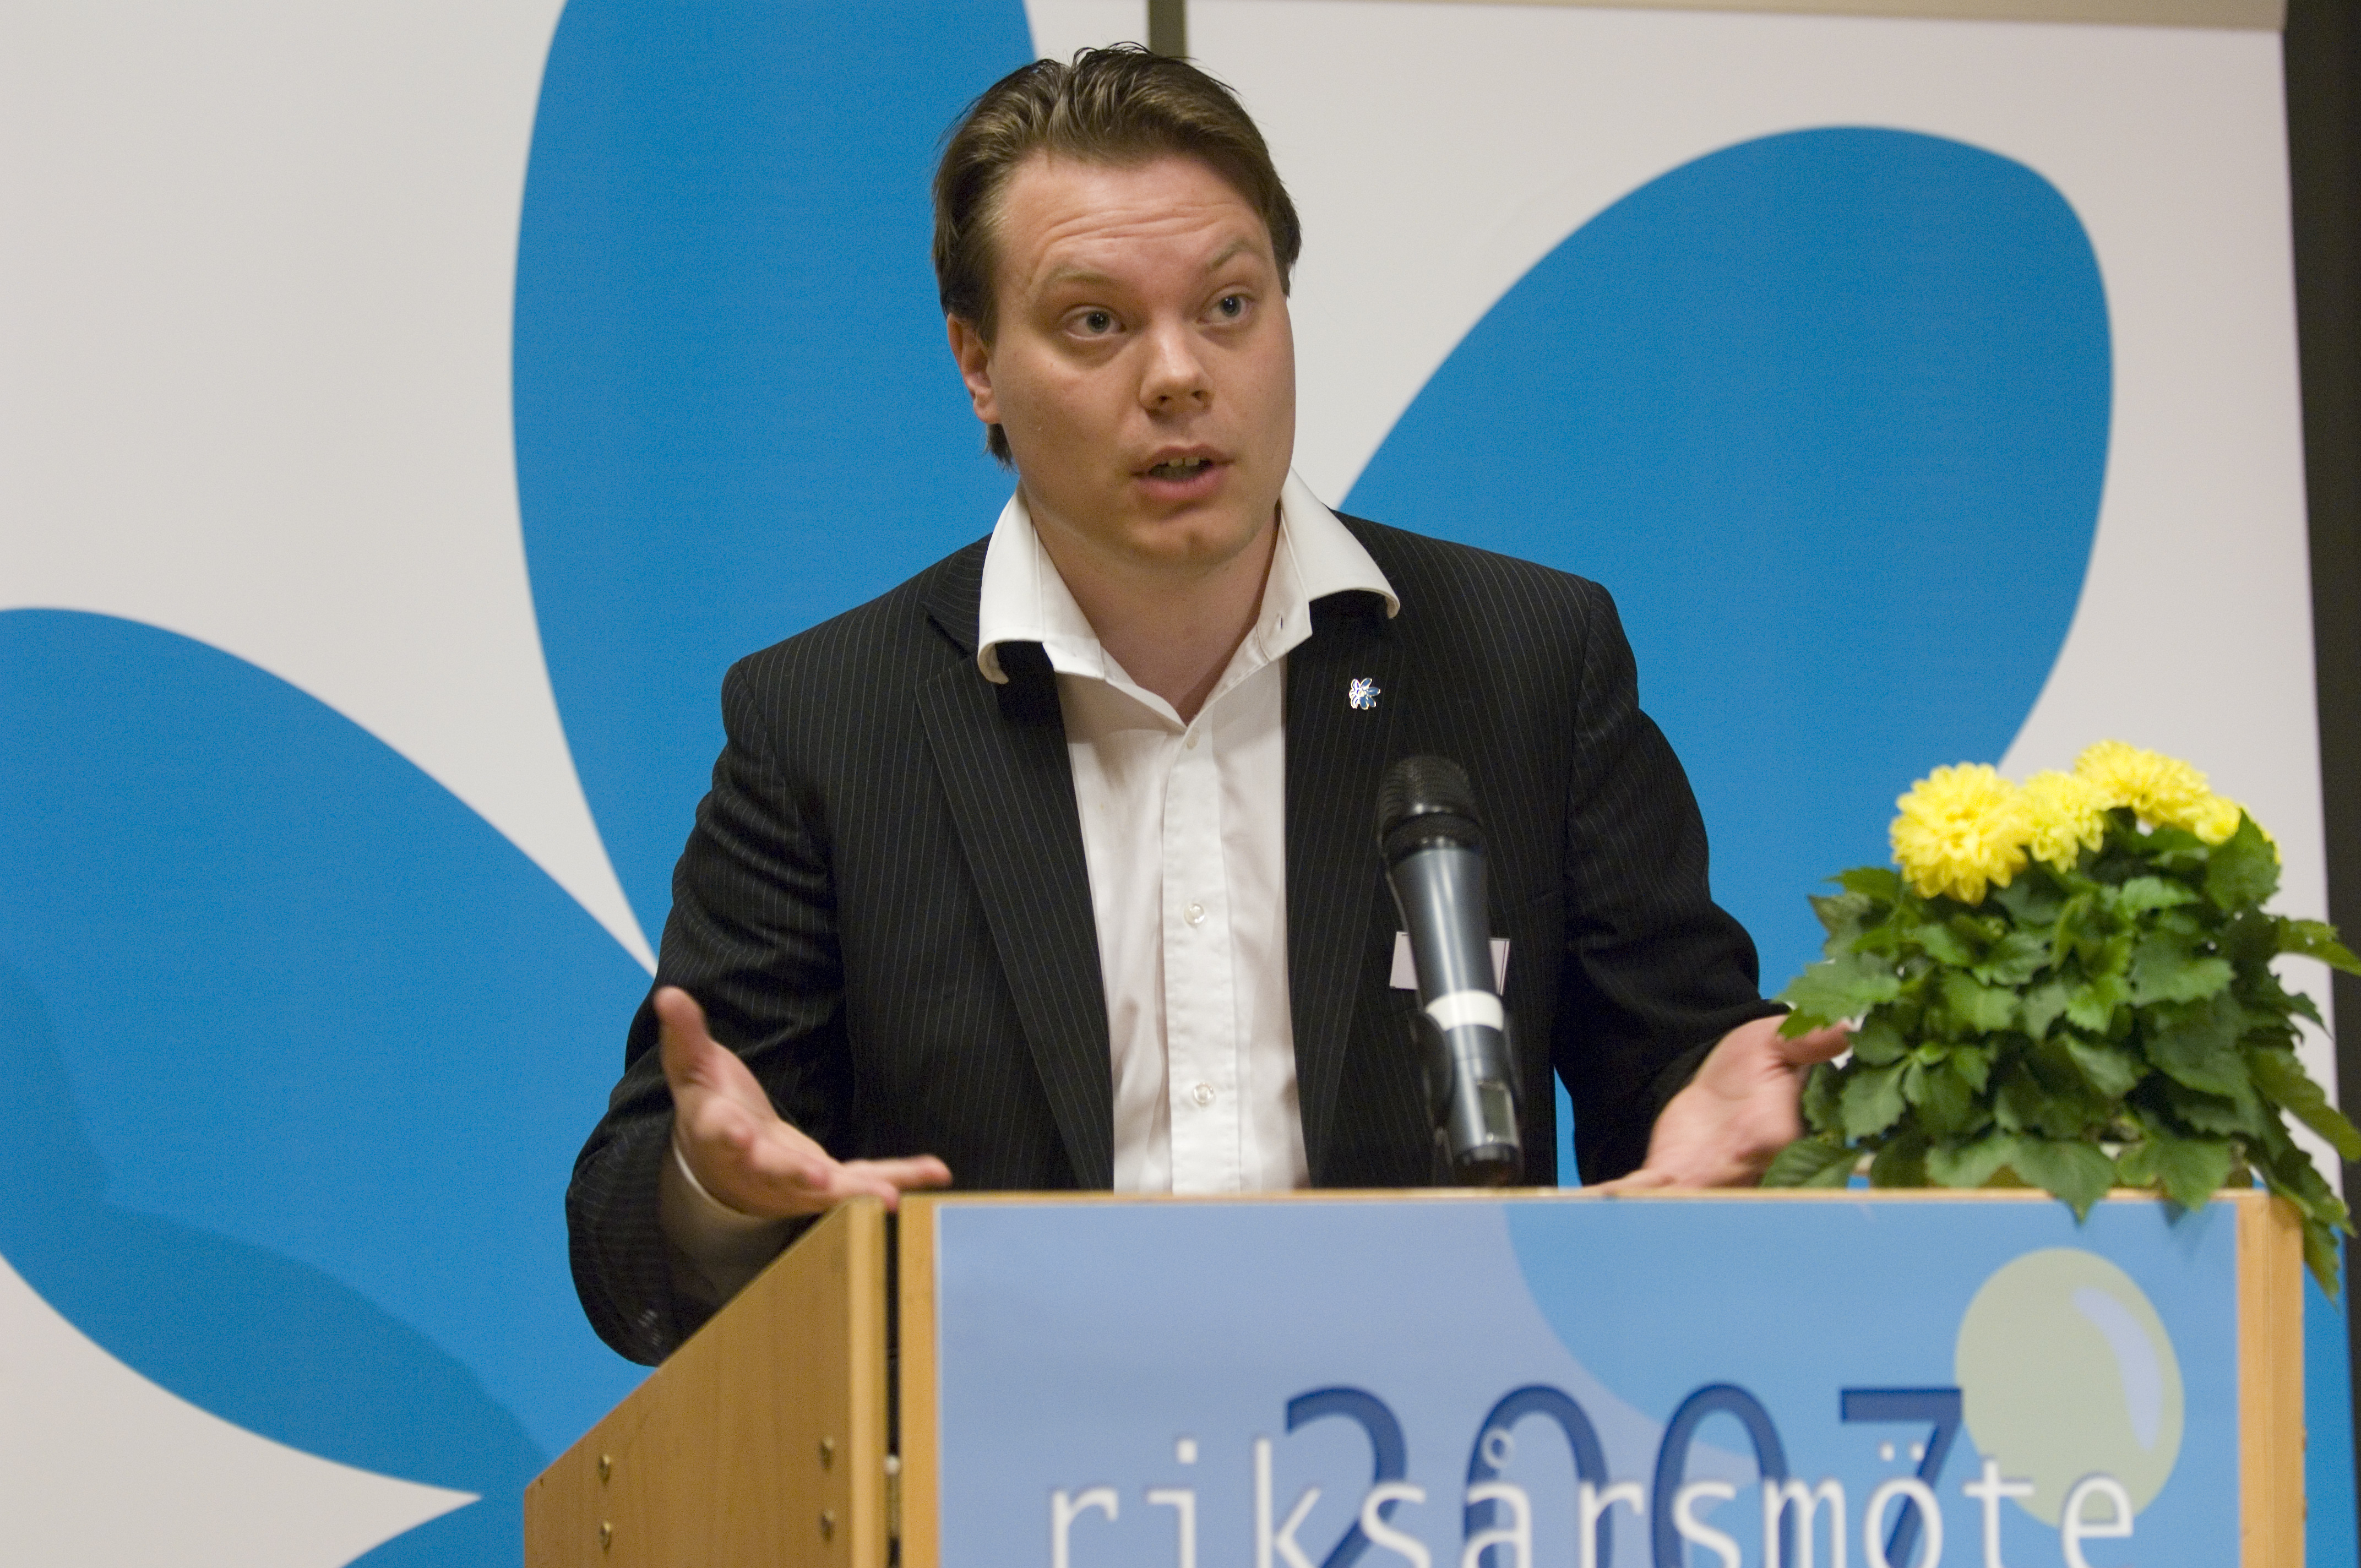 Sverigedemokraternas pressansvarige Martin Kinnunen har tagit kontakt med Göran Kummel som tillbakavisar uppgifterna om ett samarbete.